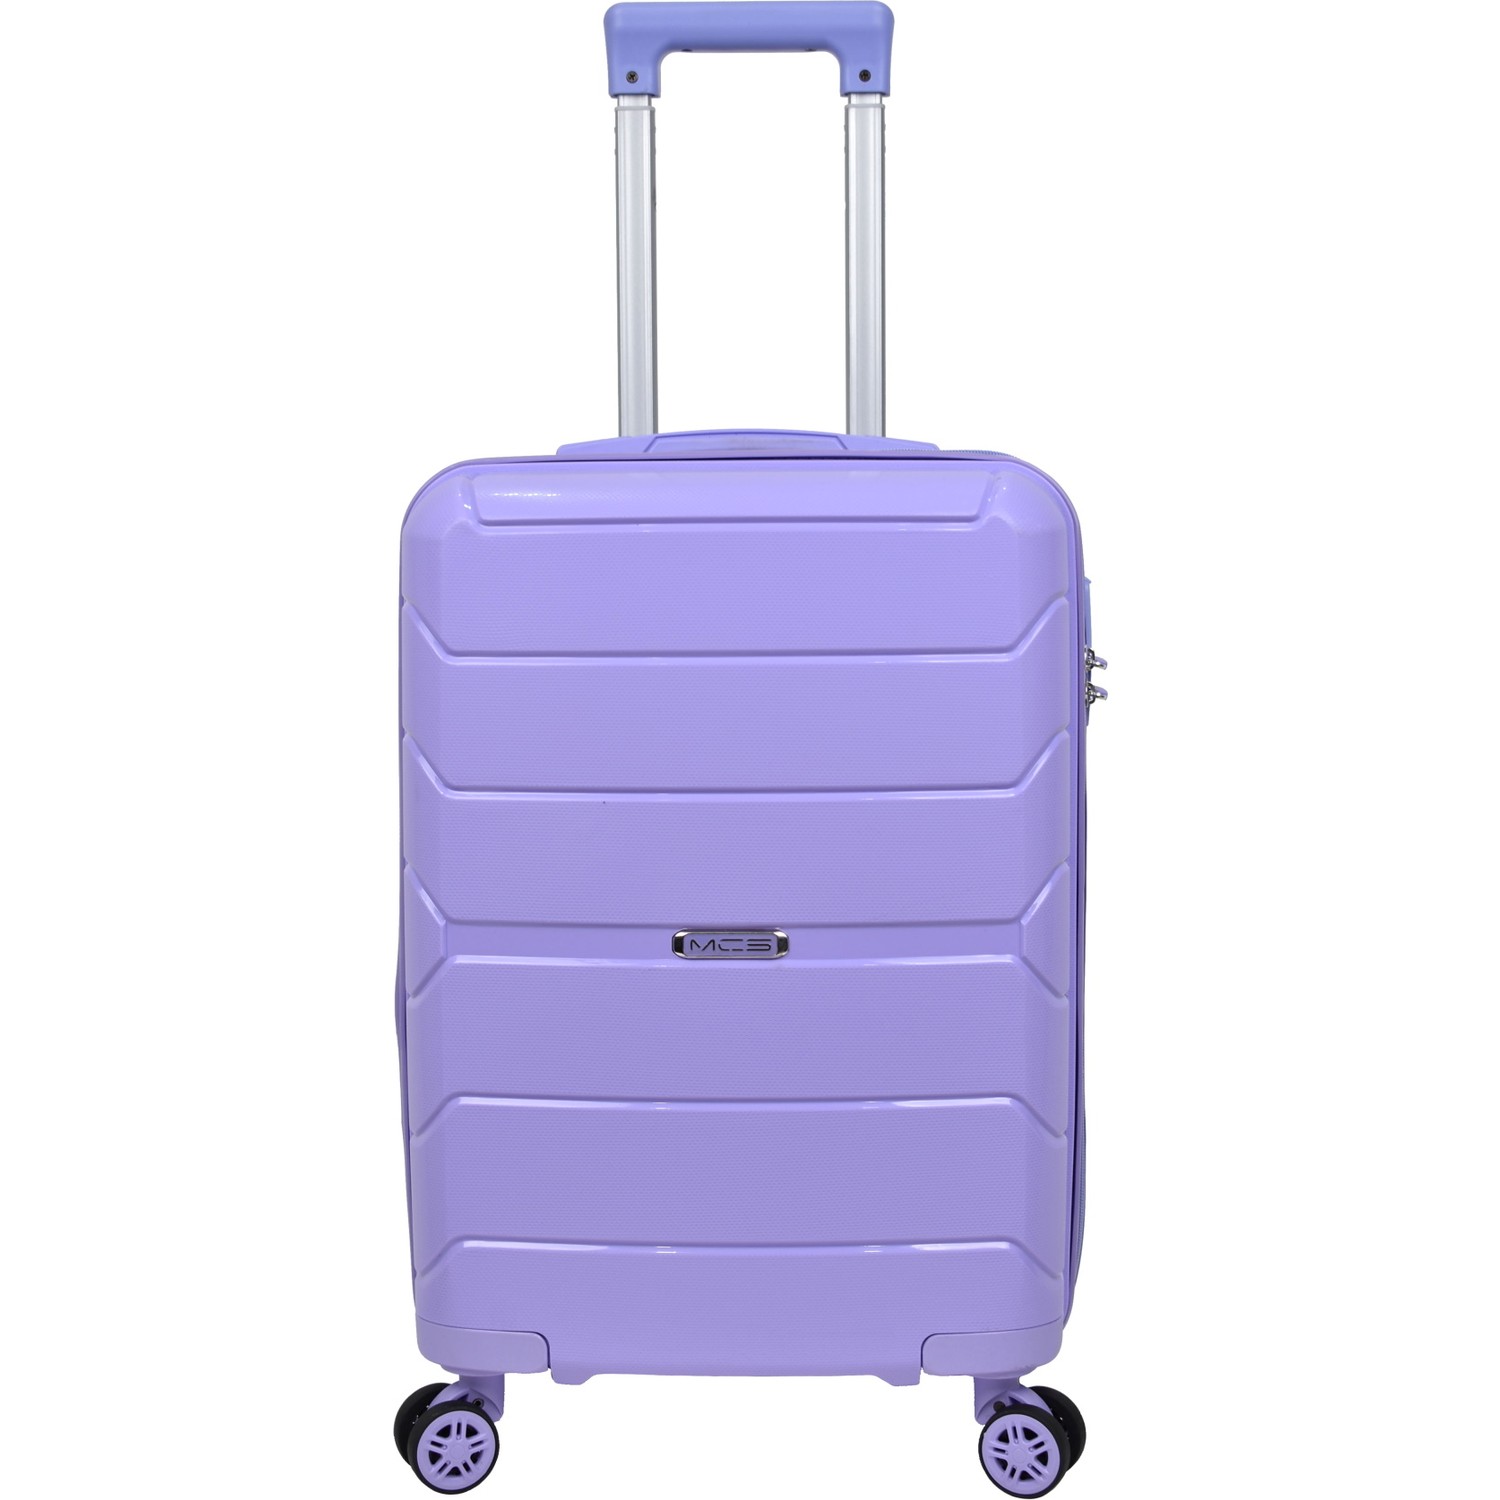 Маленький чемодан для ручьной клади из полипропилена MCS V366 S PURPLE! Для 8-10 кг! - 1